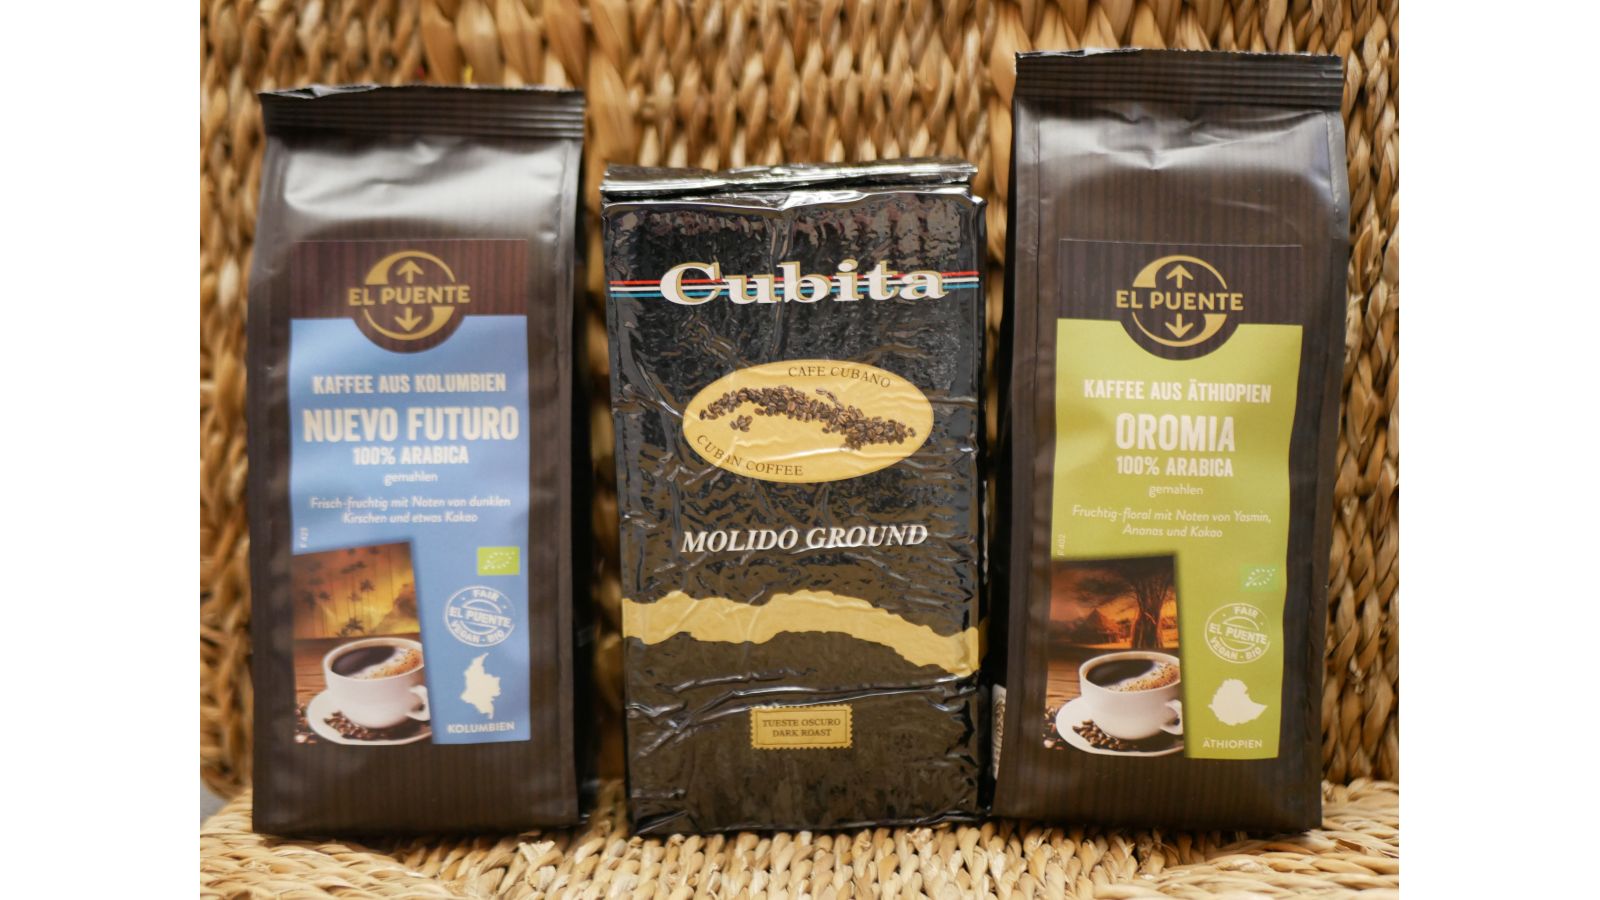 Kaffee Nuevo Futuro, Cubita Molido, Oromia